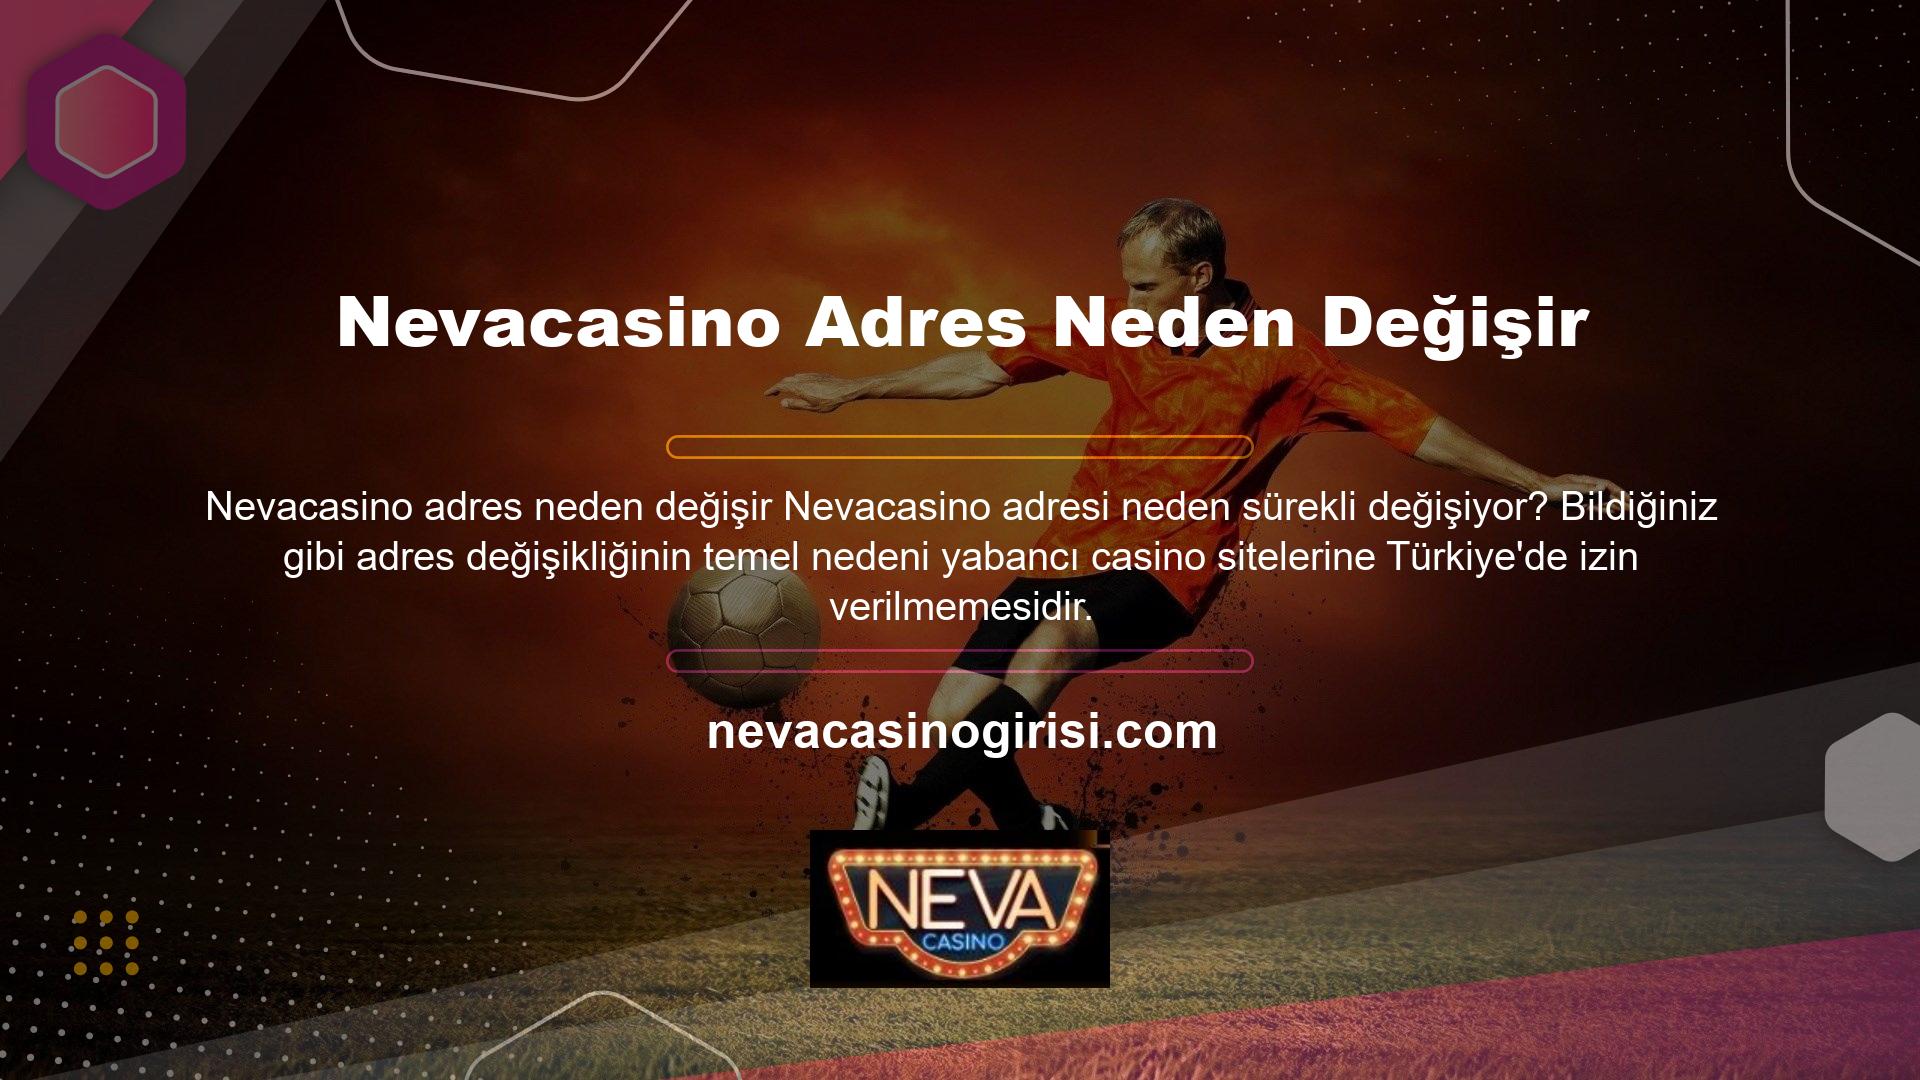 Nevacasino aynı zamanda Türk yasadışı casino sitesi, yabancı casino sitesi ve yabancı casino sitesi olarak da kullanılmaktadır